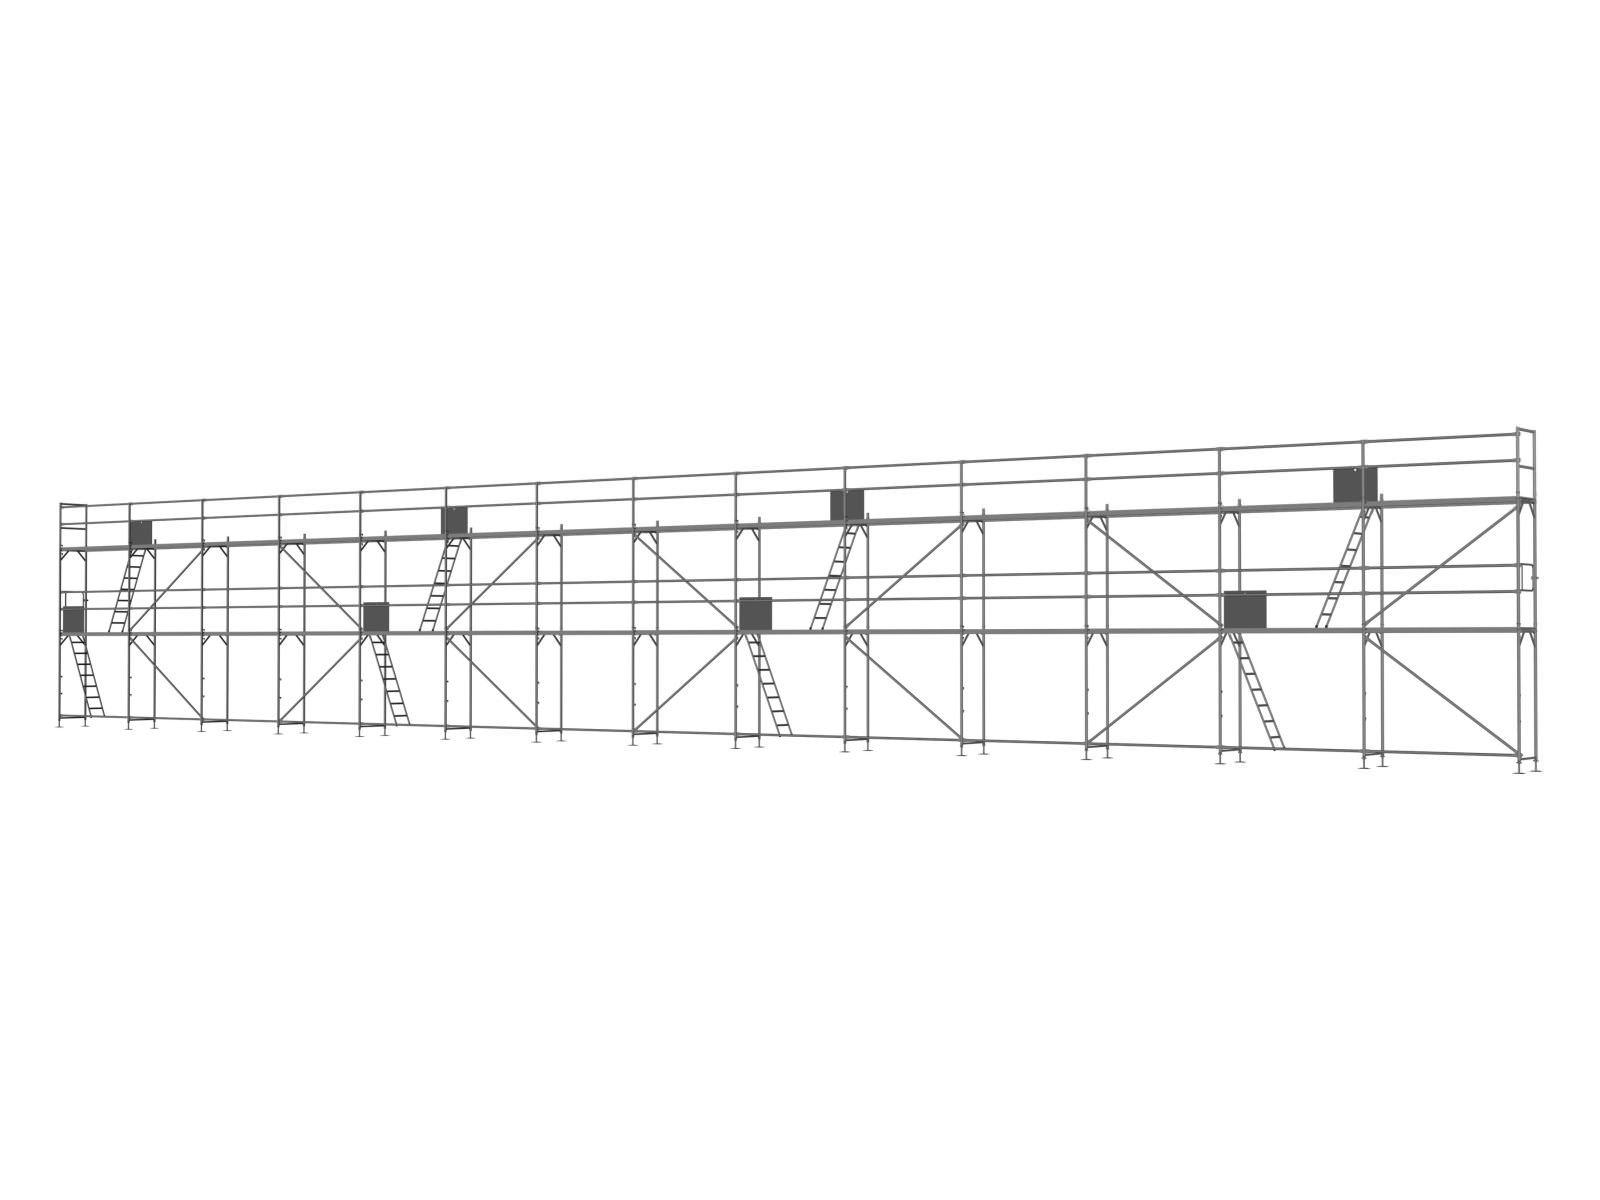 Alu Traufseitengerüst 210 qm - 2,5 m Felder - 35 m lang - 6 m Arbeitshöhe - Basis-Gerüst inkl. Aufstieg & Befestigung